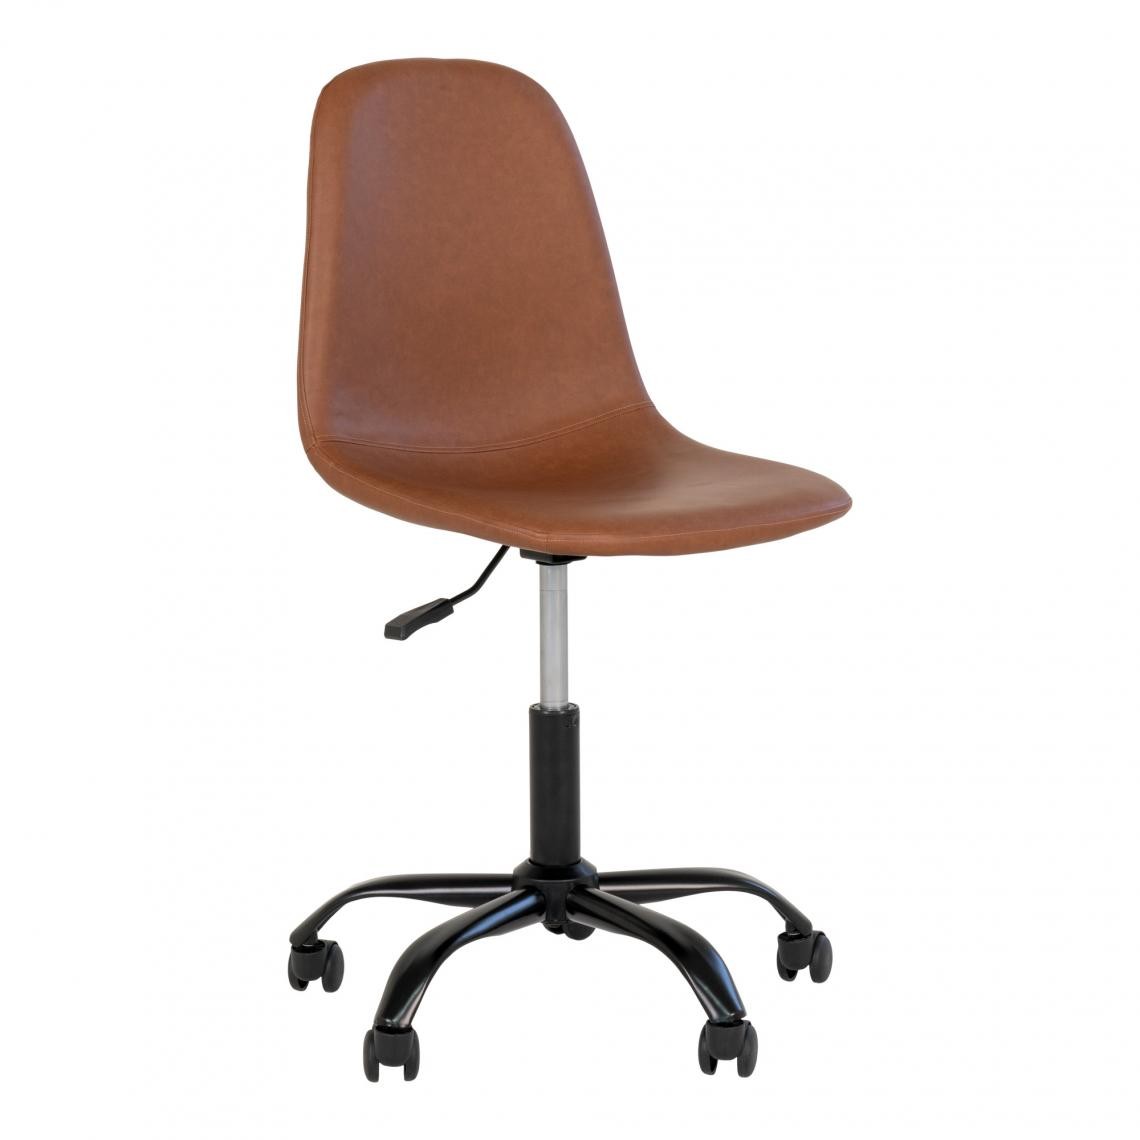 Pegane - Chaise de bureau en PU coloris marron clair - longueur 48 x profondeur 44 x hauteur 86-94 cm - Chaises